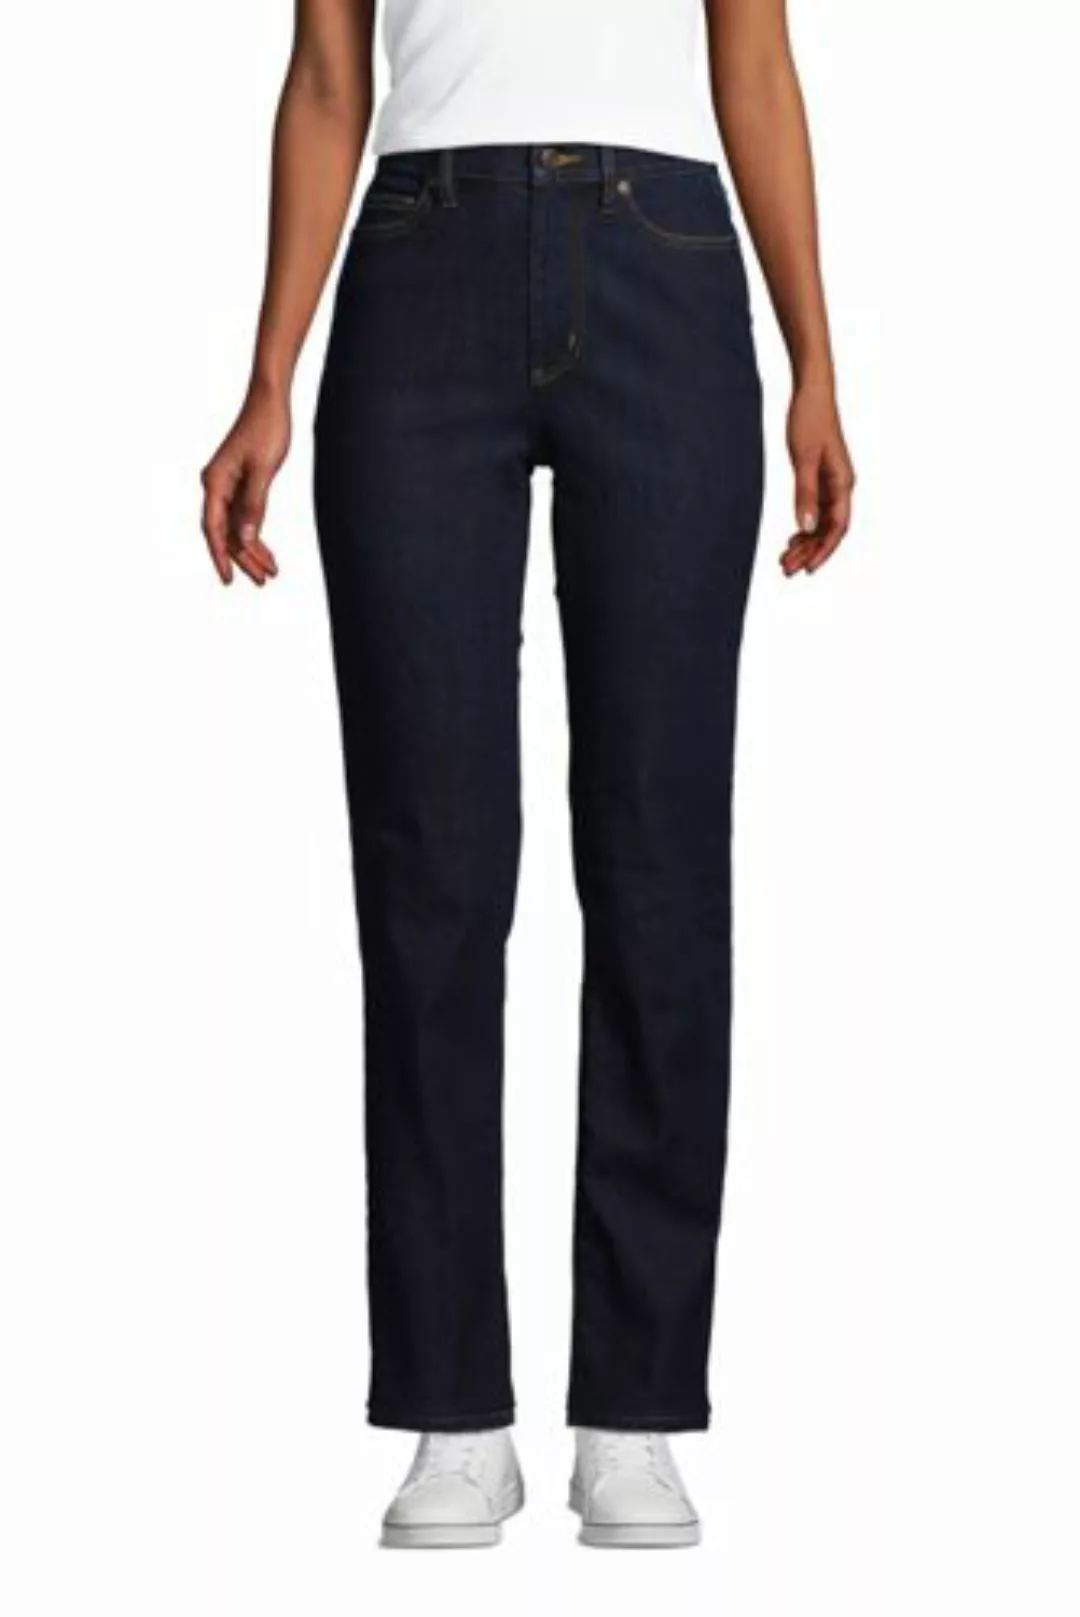 Straight Fit Öko Jeans High Waist, Damen, Größe: 38 32 Normal, Blau, Elasth günstig online kaufen